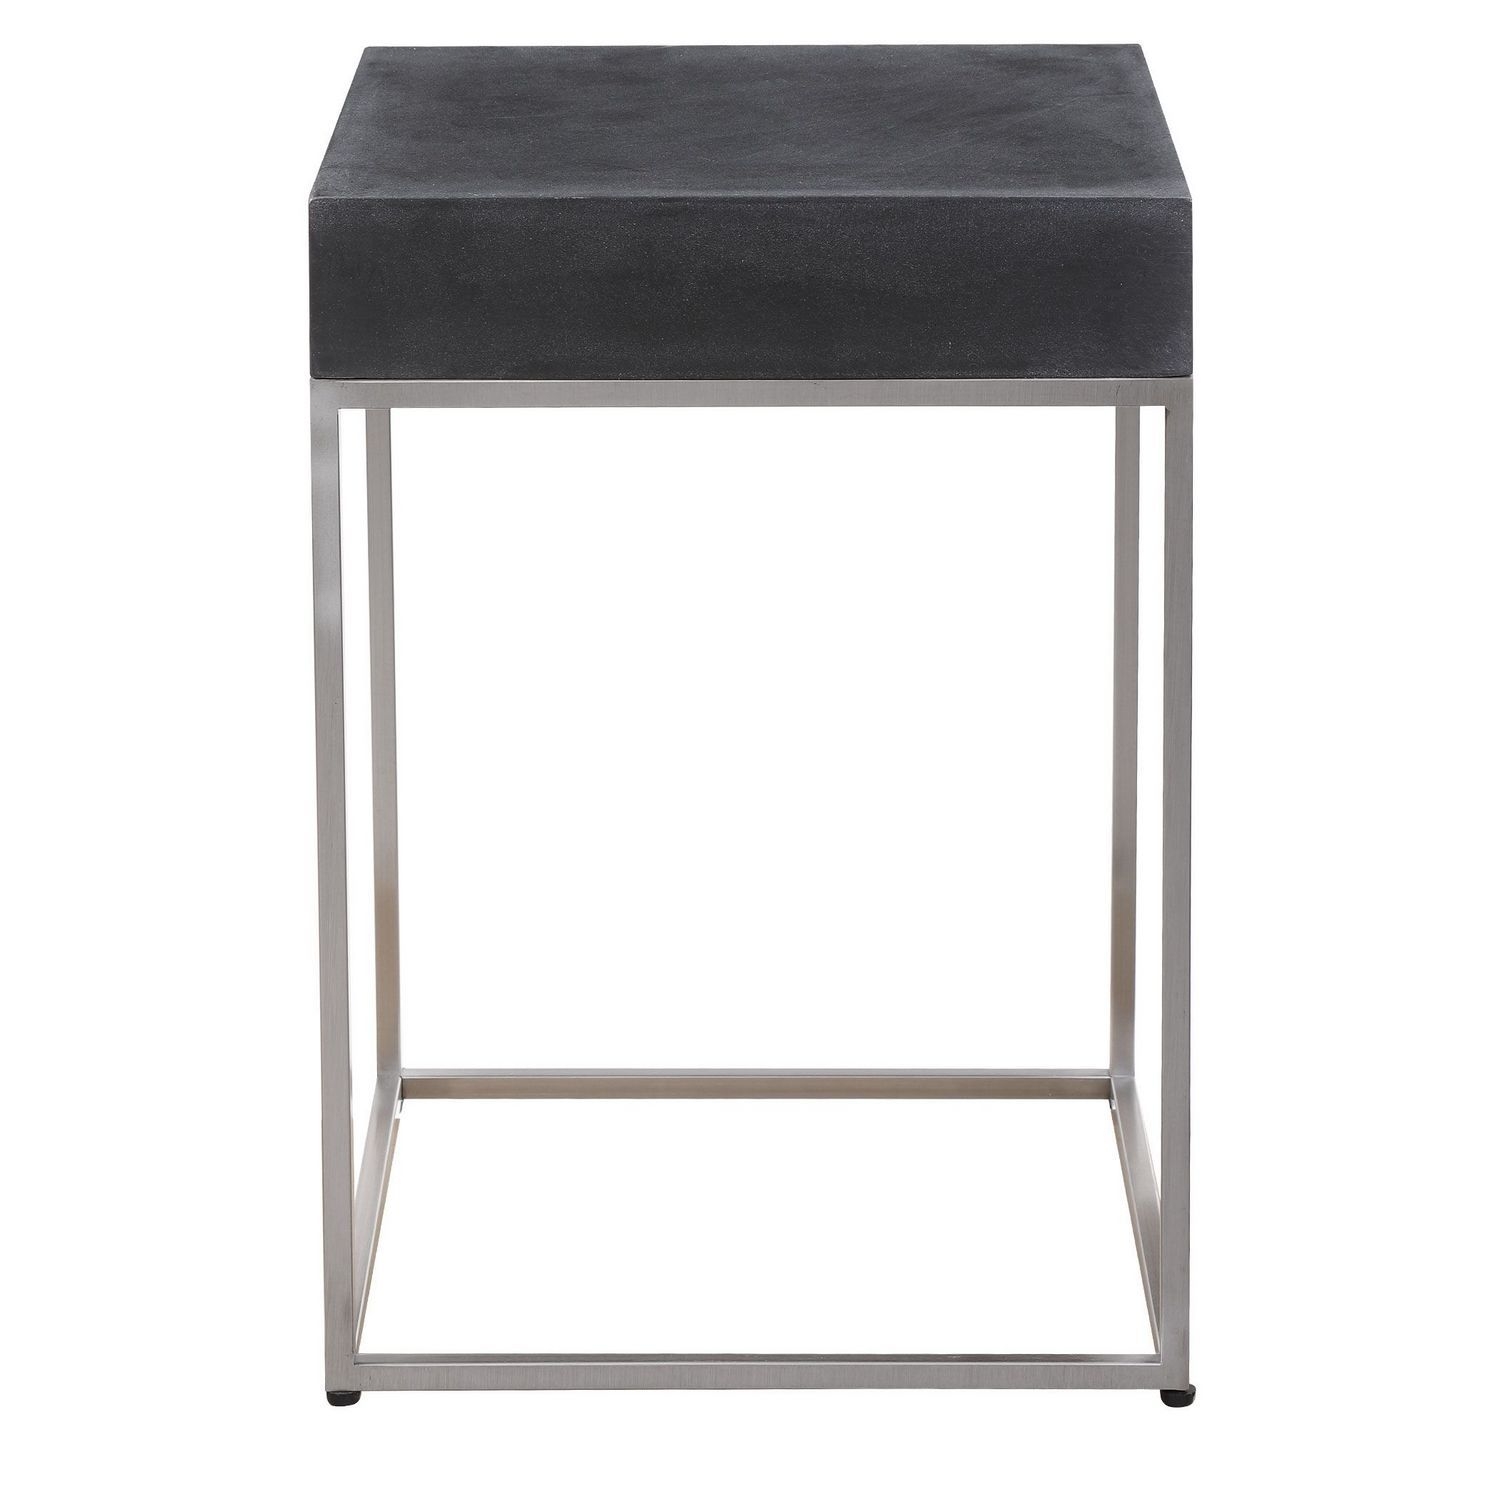 Uttermost Jase Concrete Accent Table - Black